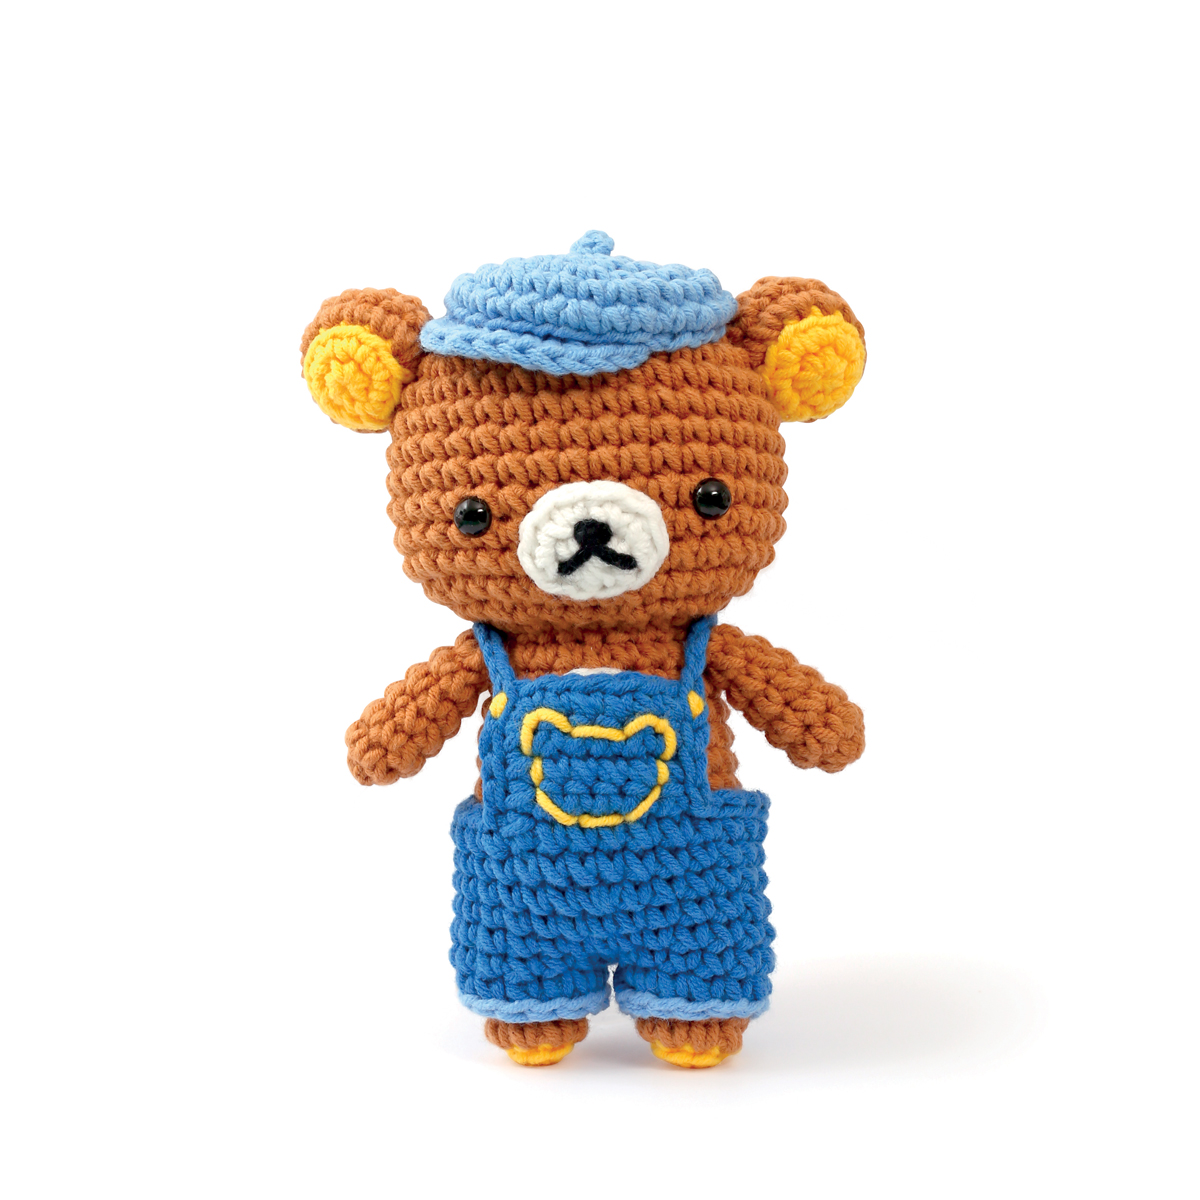 Kit Amigurumi pour confectionner un petit ourson Rilakkuma en crochet - Mes  courses en vrac